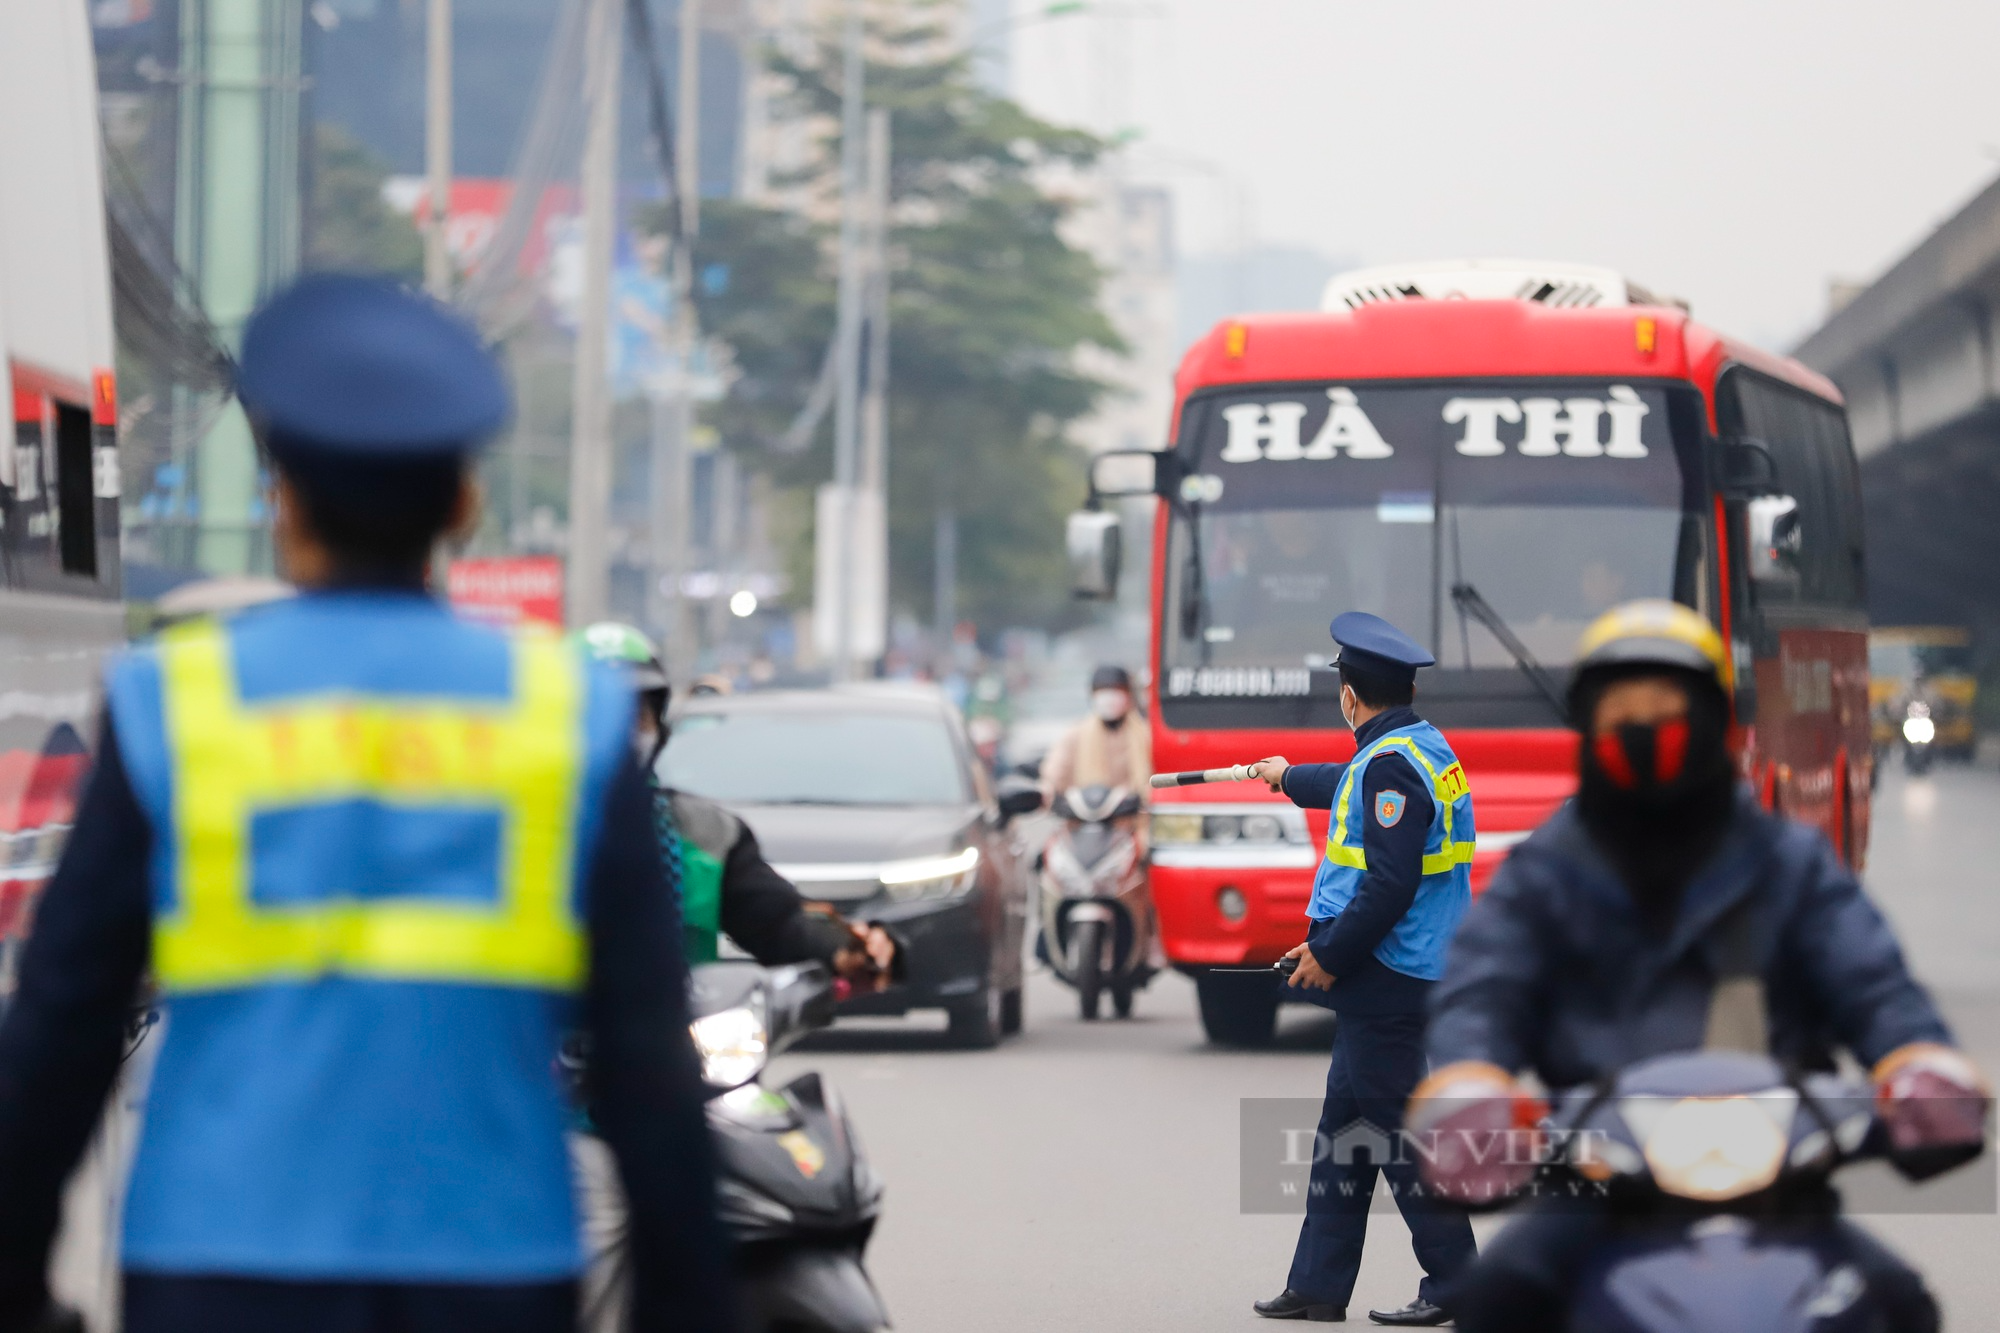 TTGT Hà Nội xử phạt xe khách vi phạm, bến xe bắt đầu &quot;nóng&quot; trước kỳ nghỉ Tết Dương lịch - Ảnh 11.